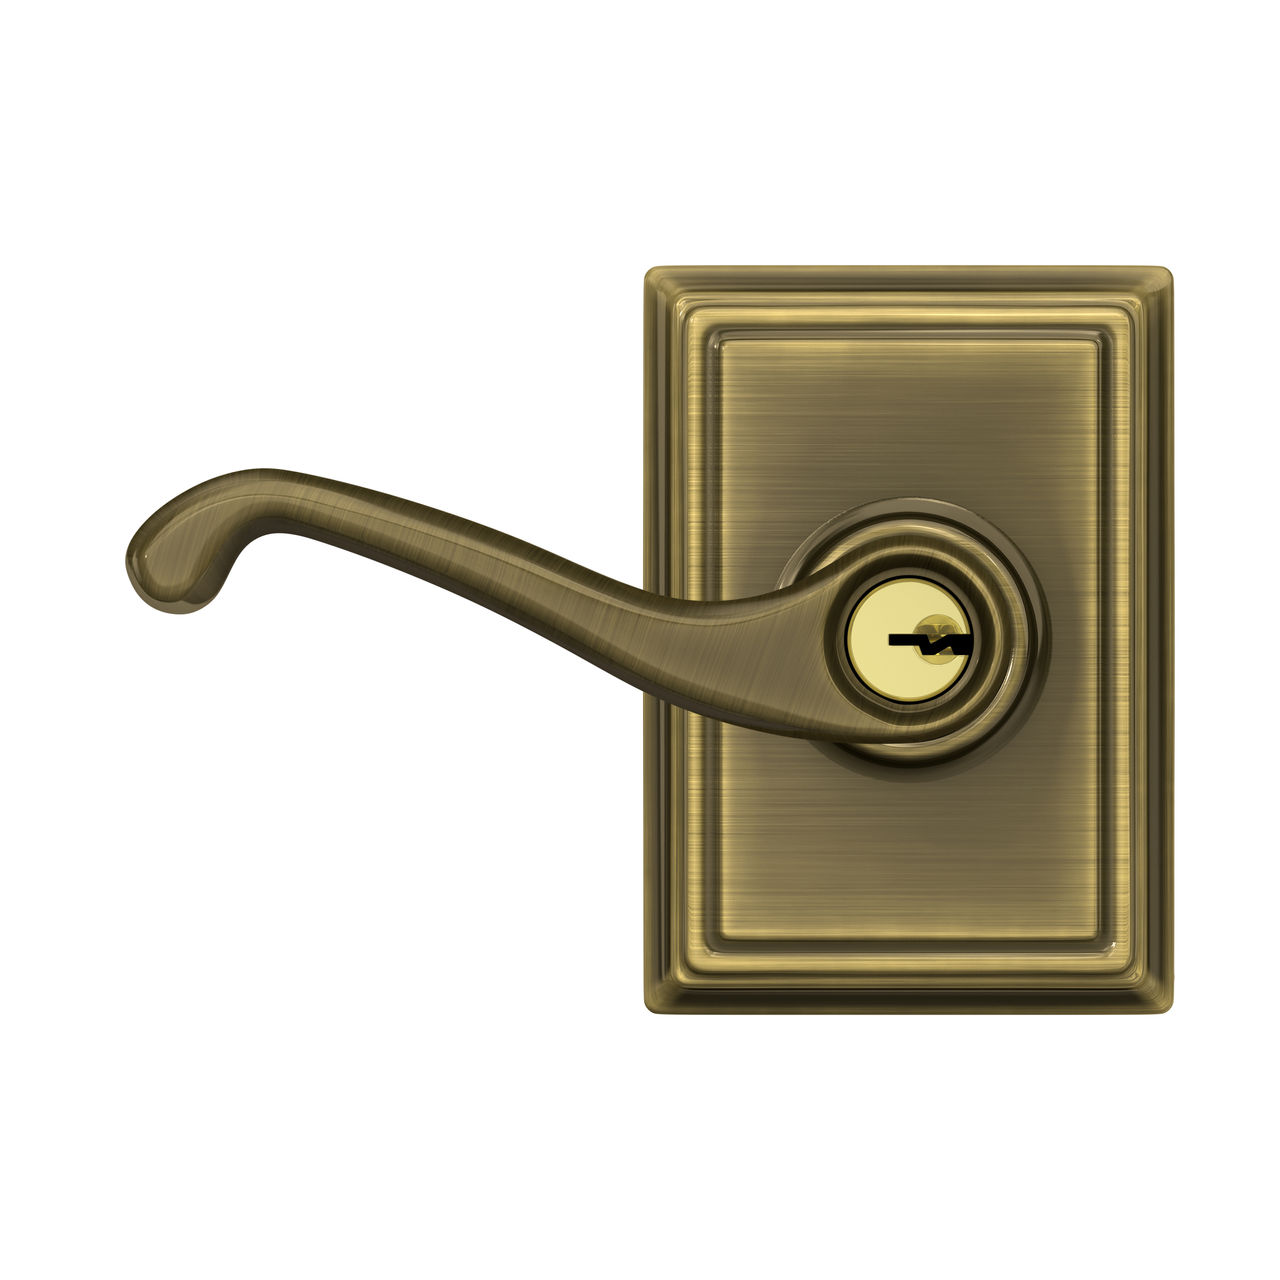 Flair Lever Keyed Entry Lock